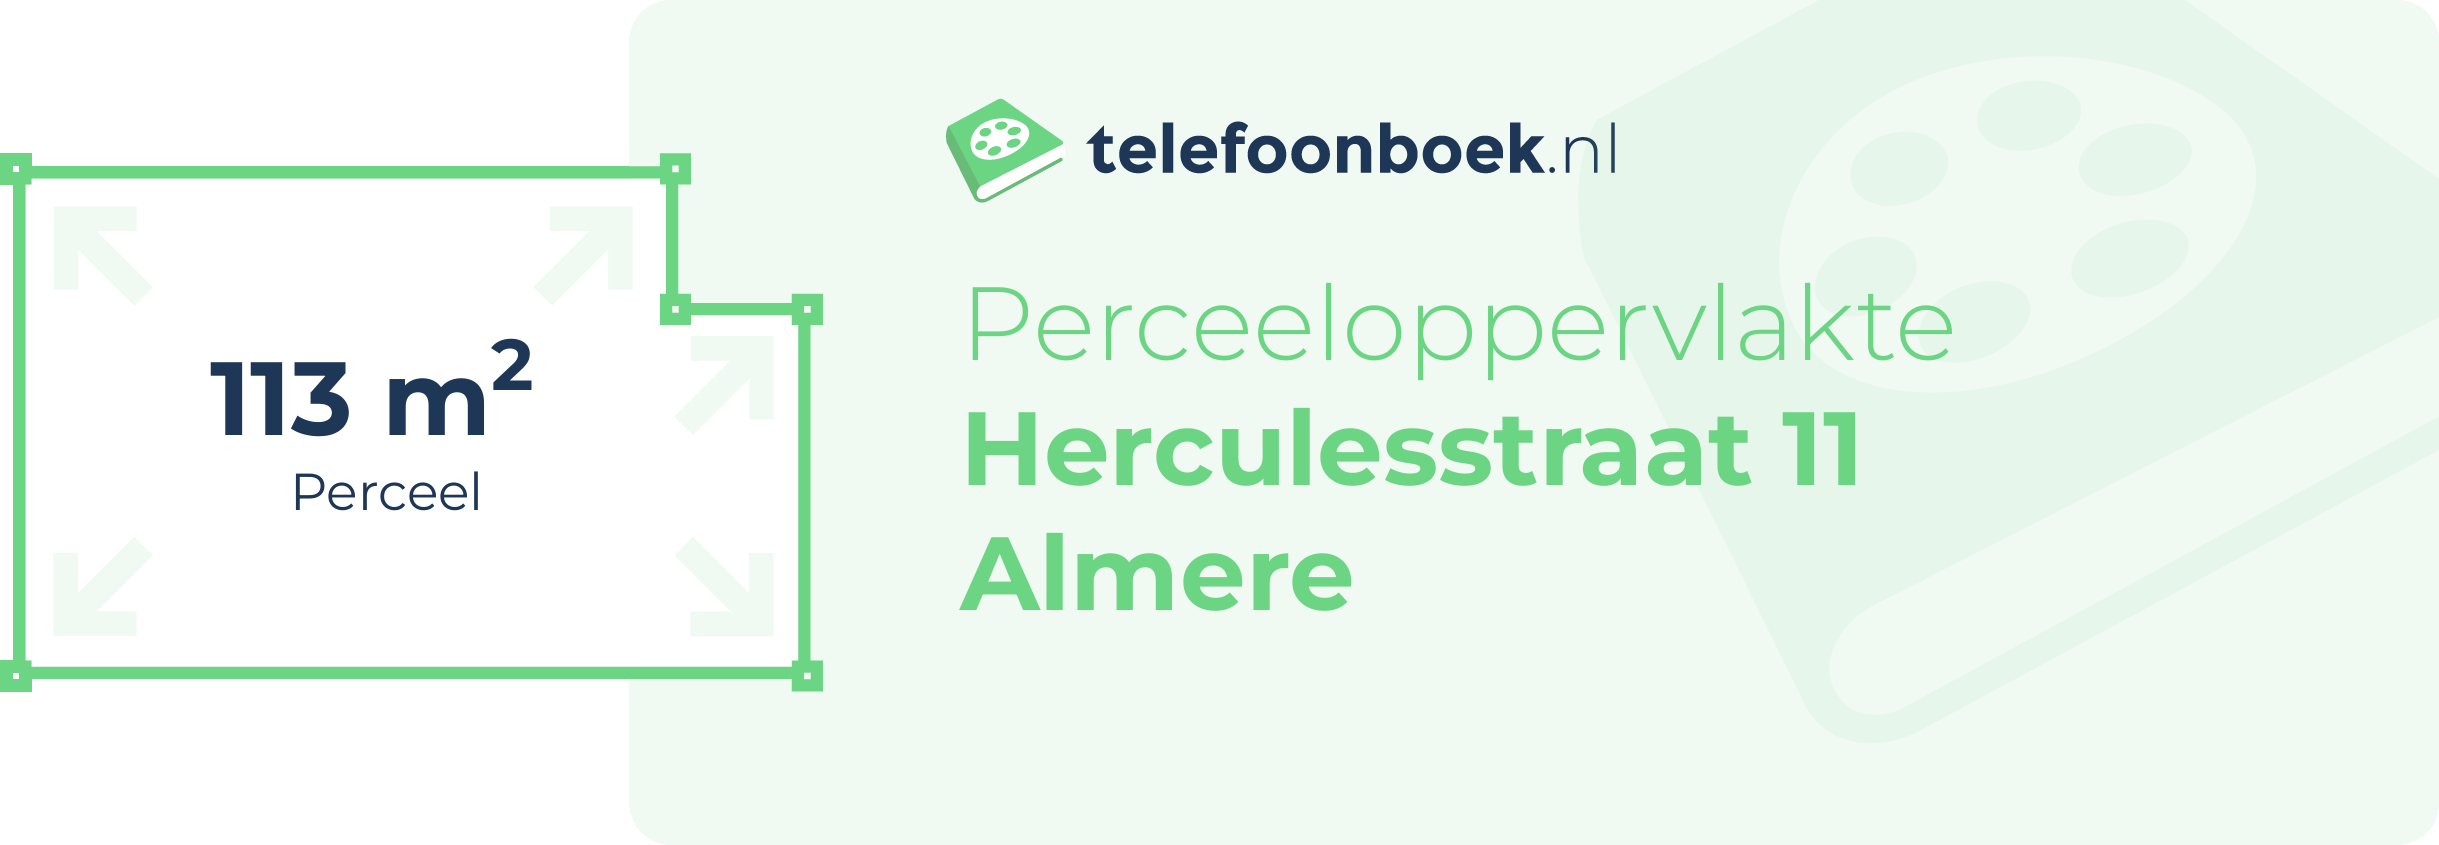 Perceeloppervlakte Herculesstraat 11 Almere